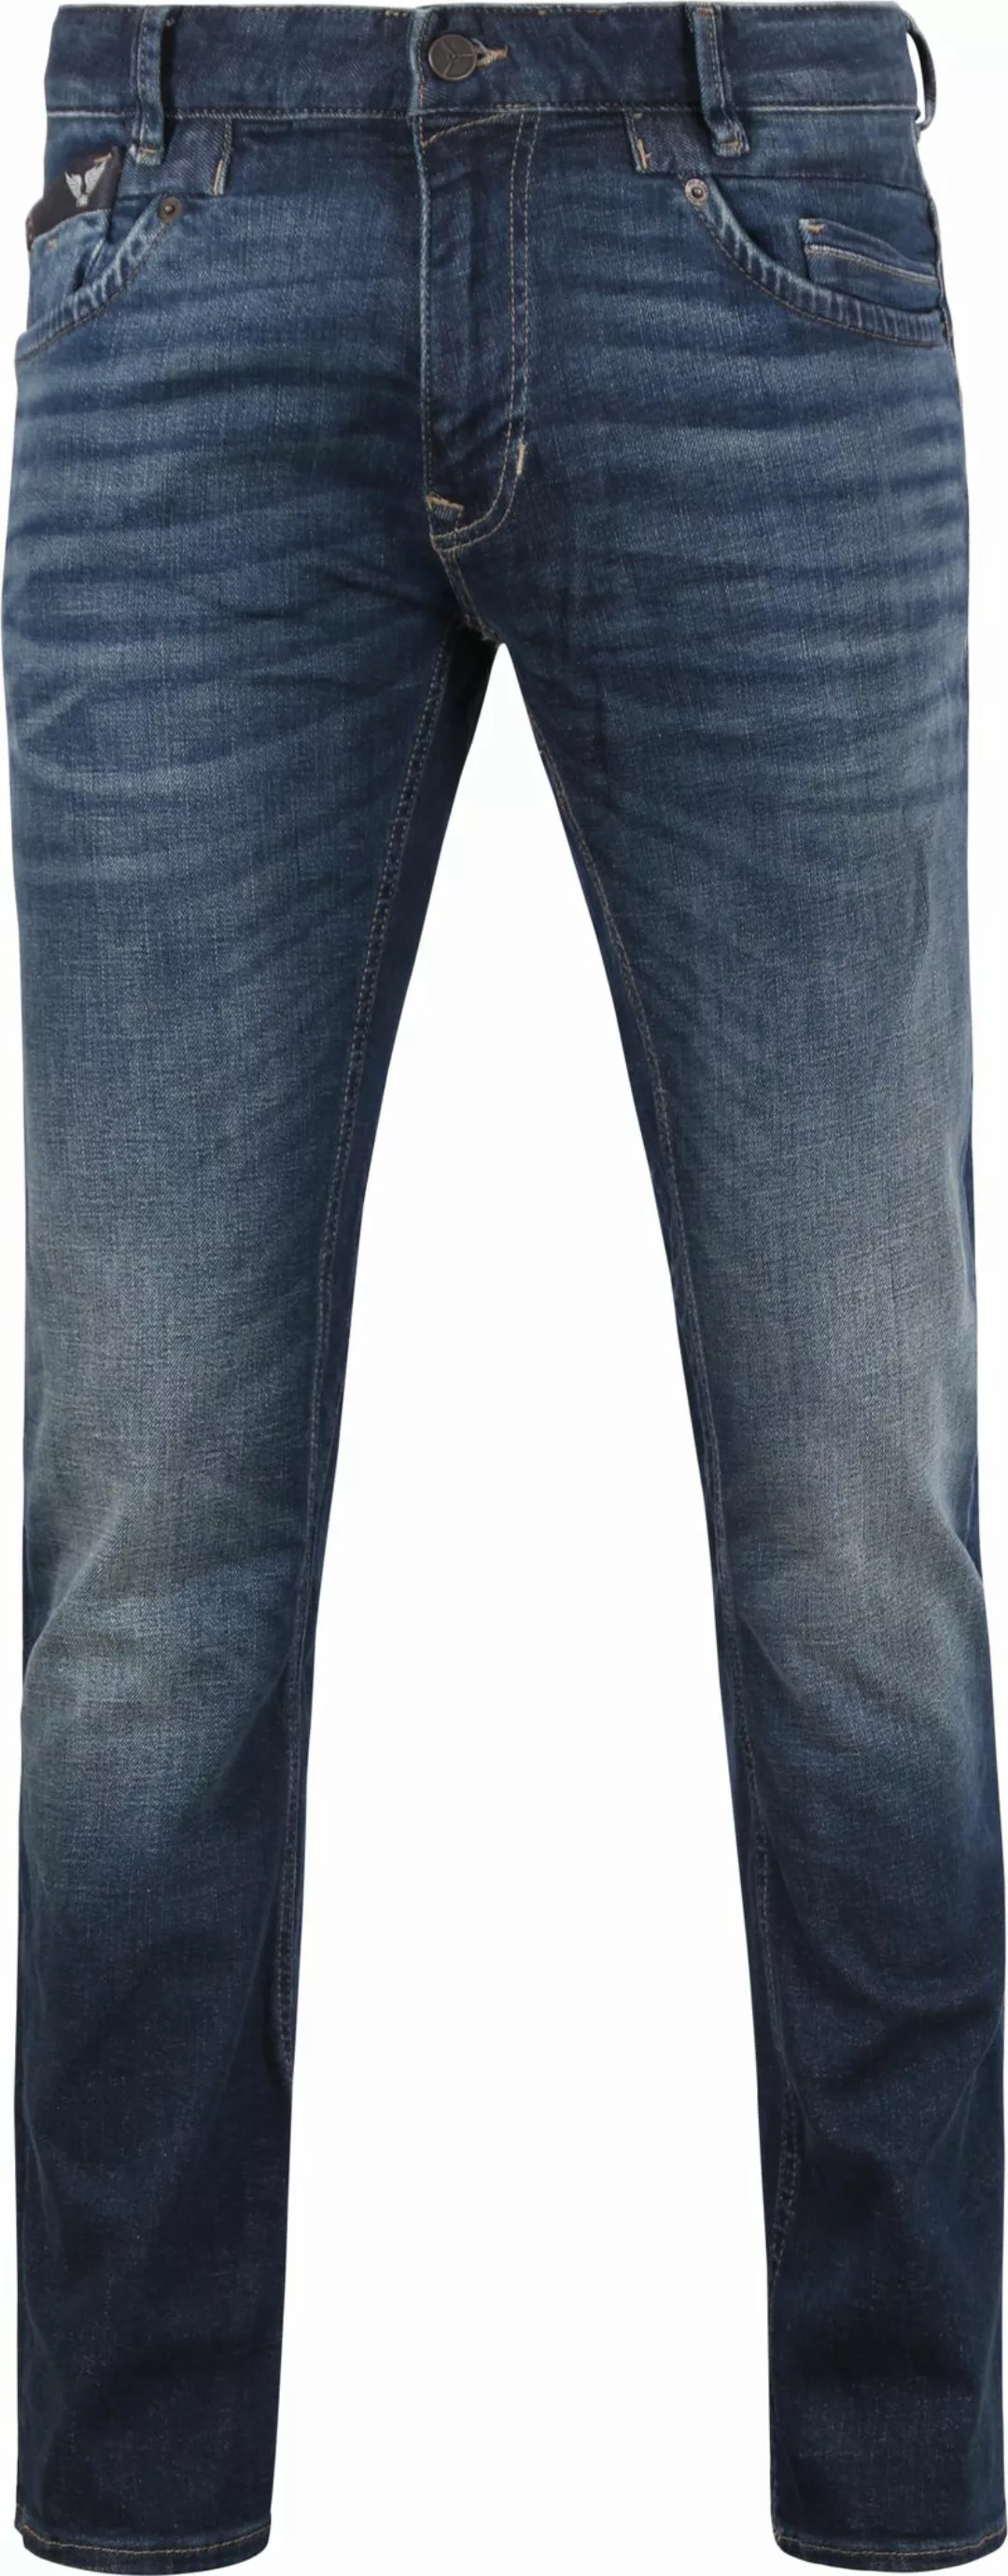 PME Legend Commander 3.0 Jeans Blau DBF - Größe W 35 - L 32 günstig online kaufen